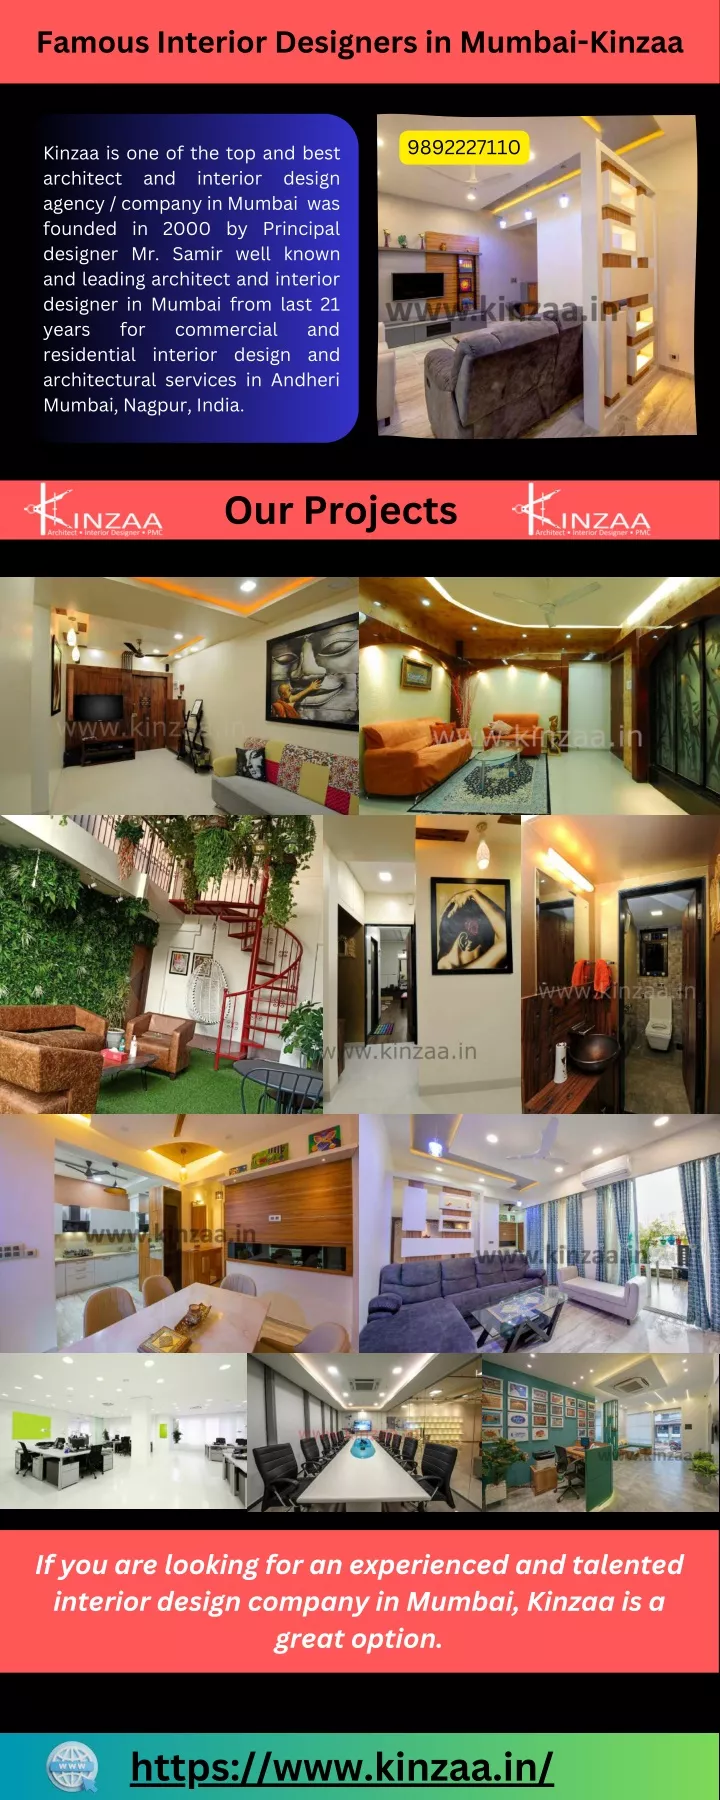 famous interior designers in mumbai kinzaa